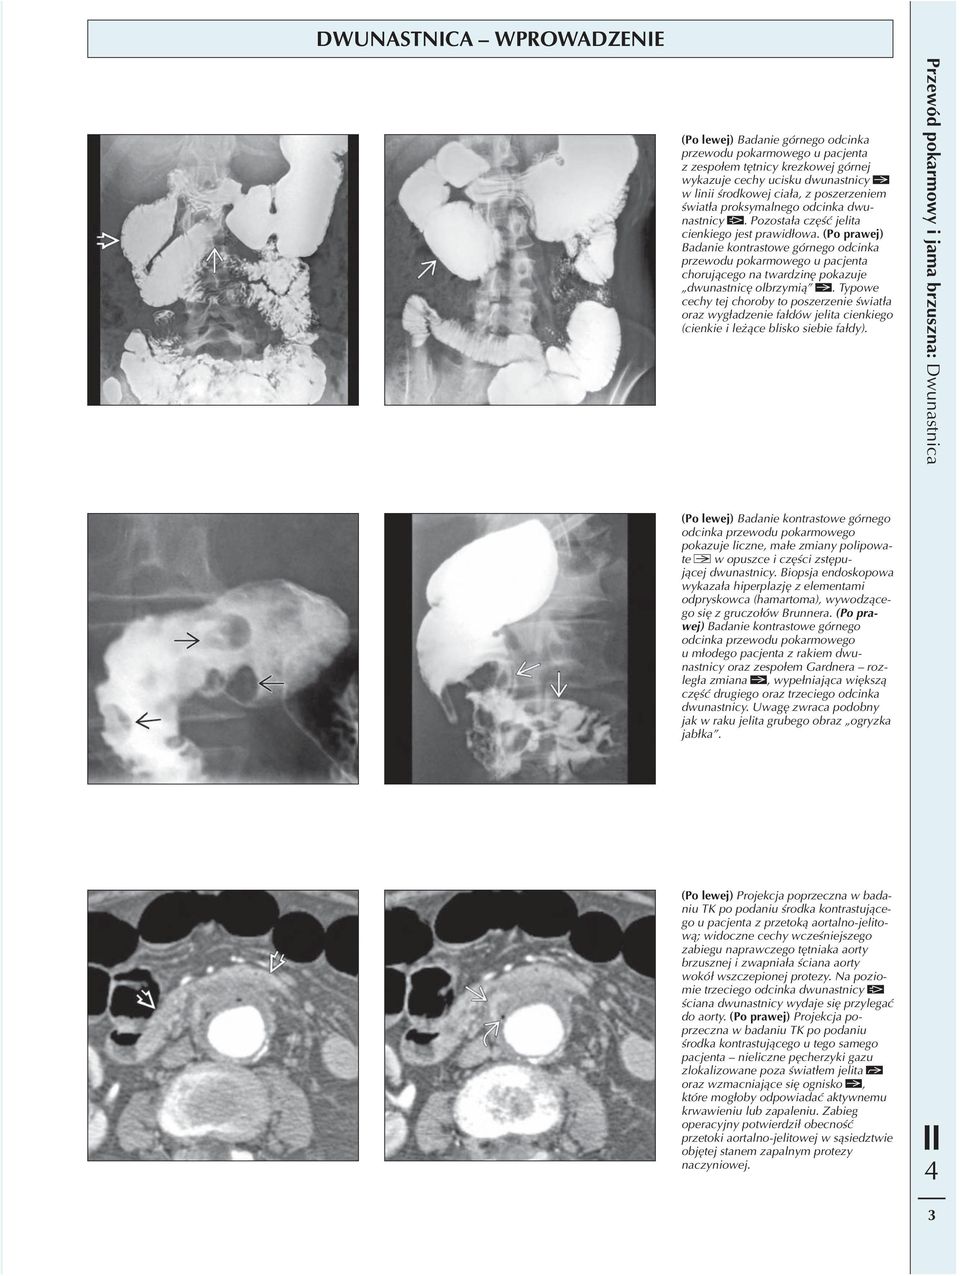 (Po prawej) Badanie kontrastowe górnego odcinka przewodu pokarmowego u pacjenta chorującego na twardzinę pokazuje dwunastnicę olbrzymią.